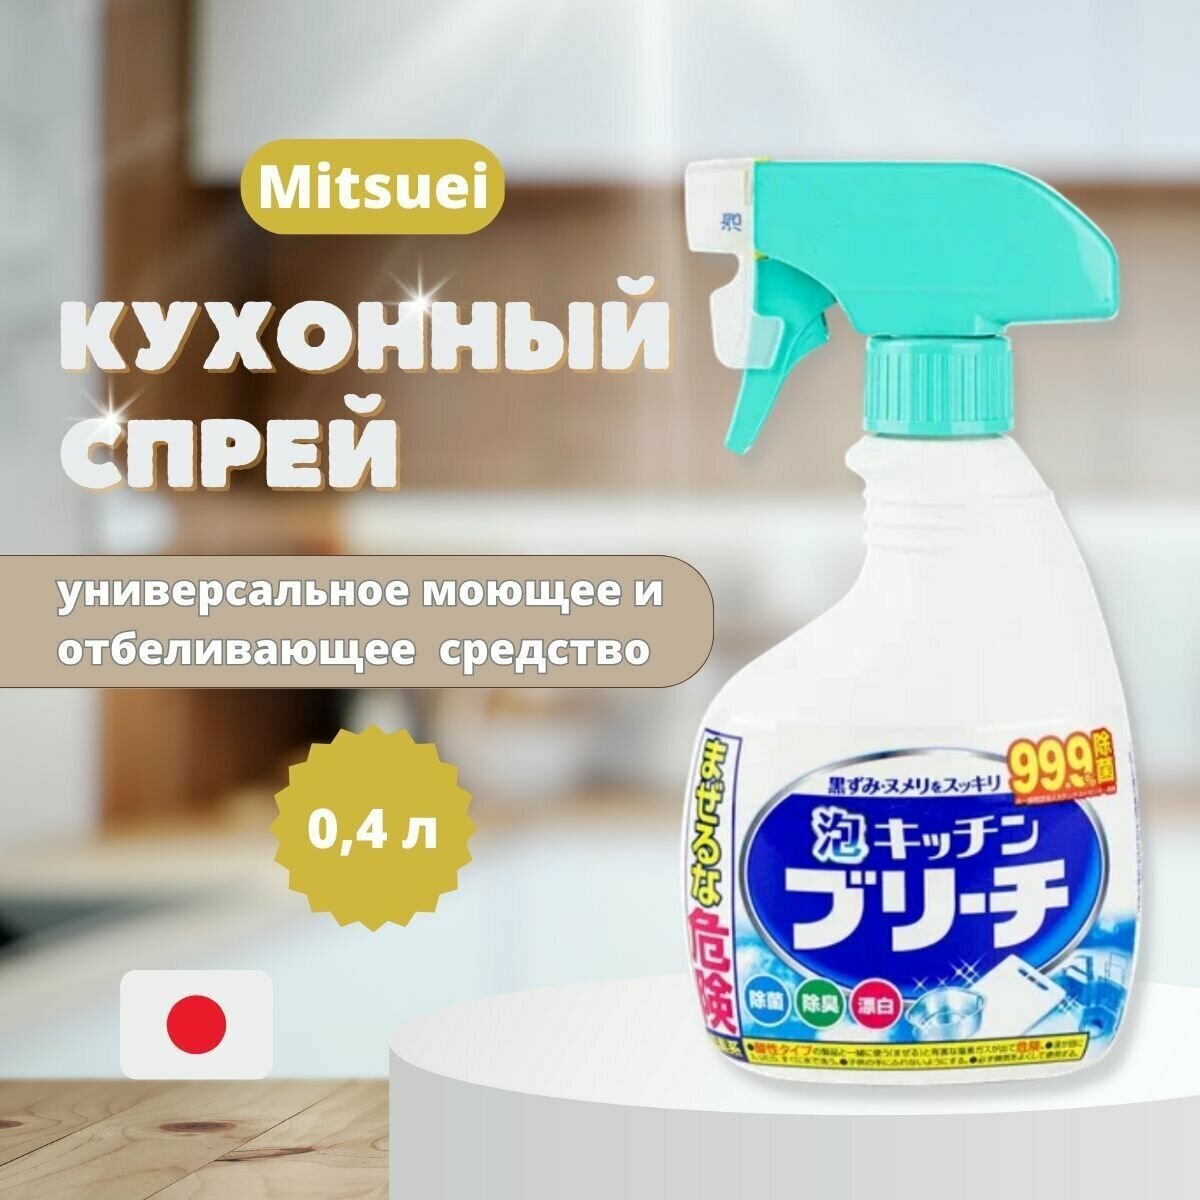 Чистящее средство для кухни, универсальное моющее и отбеливающее средство, 0,4 л, кухонный спрей Mitsuei